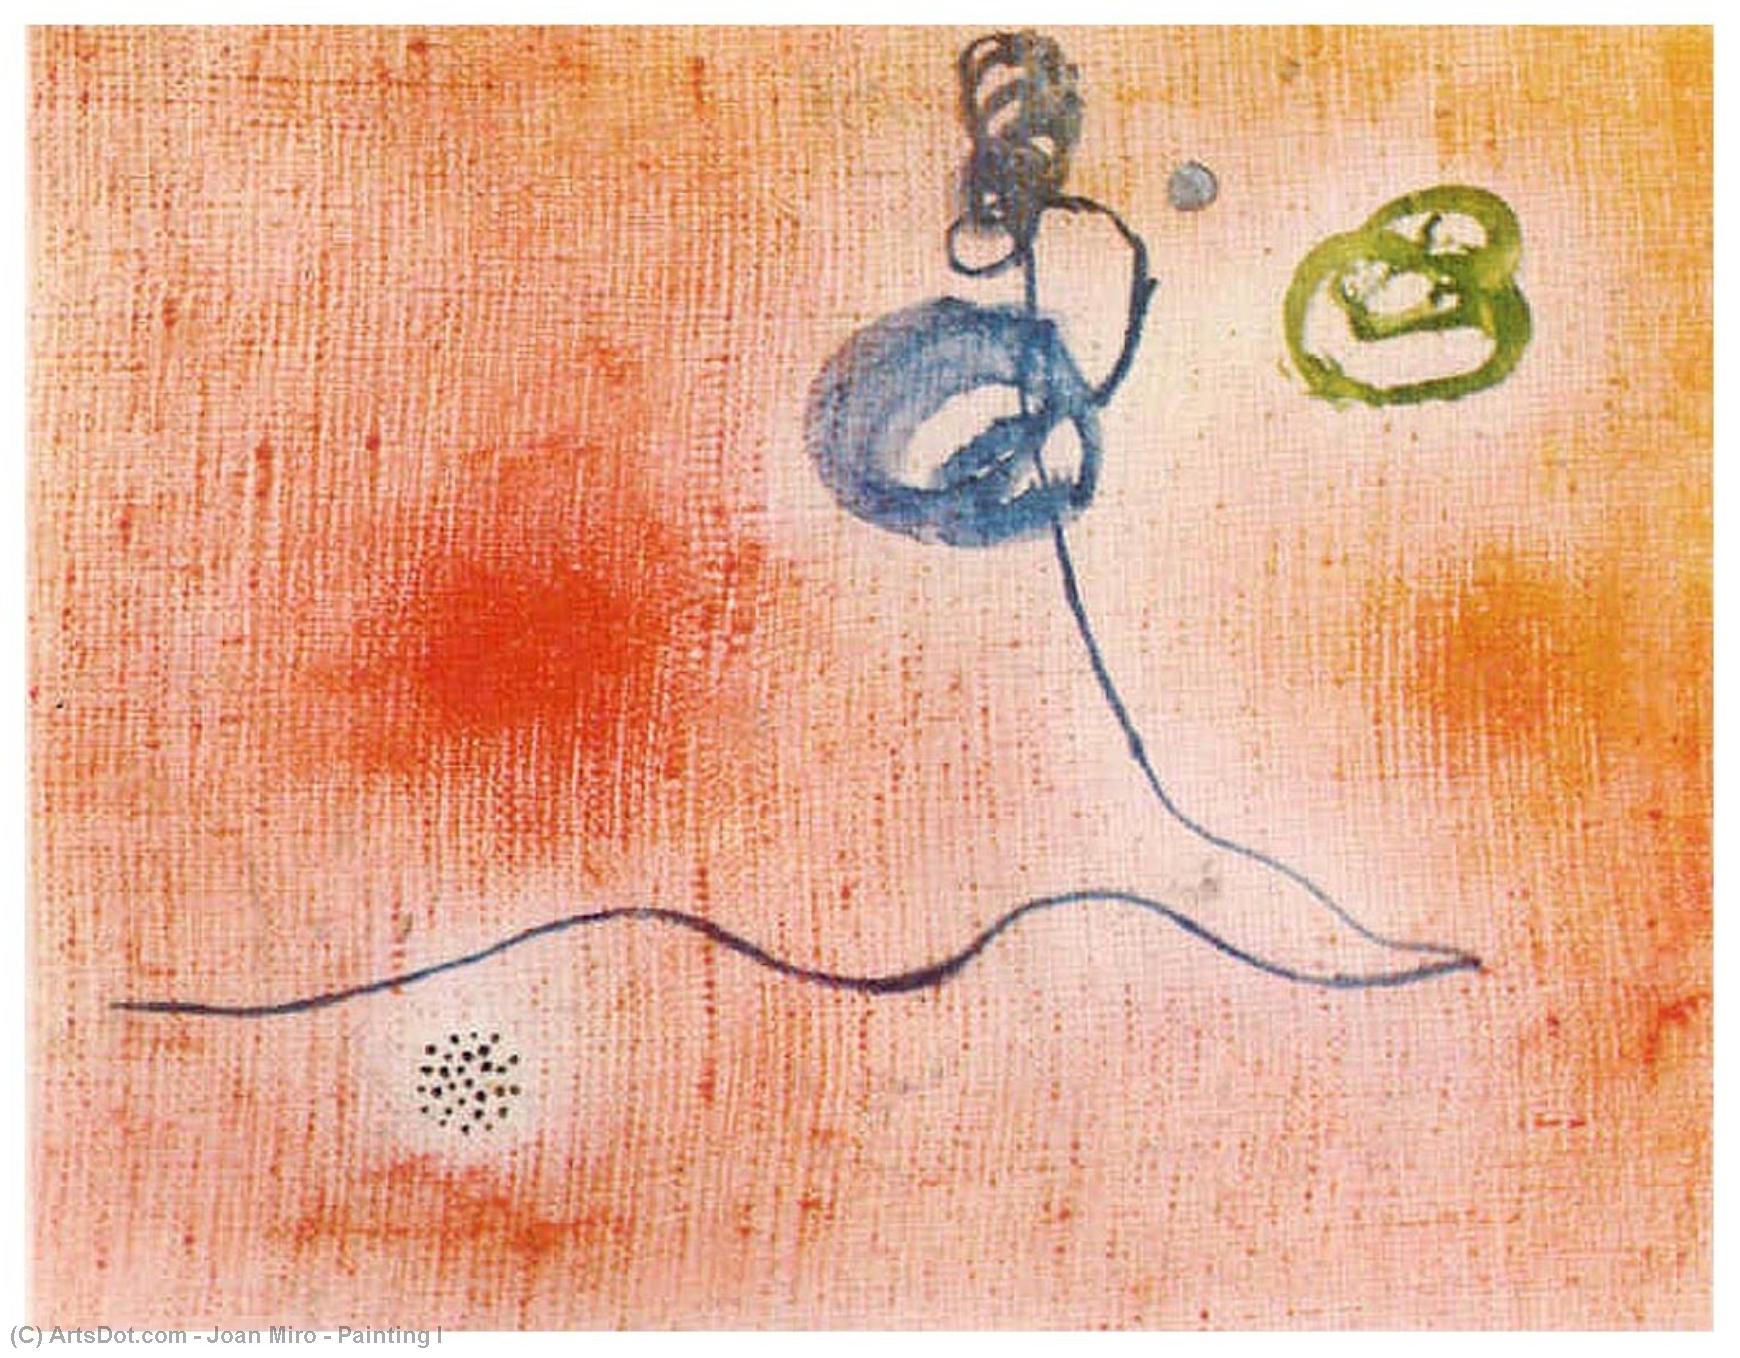 WikiOO.org - Enciklopedija dailės - Tapyba, meno kuriniai Joan Miro - Painting I